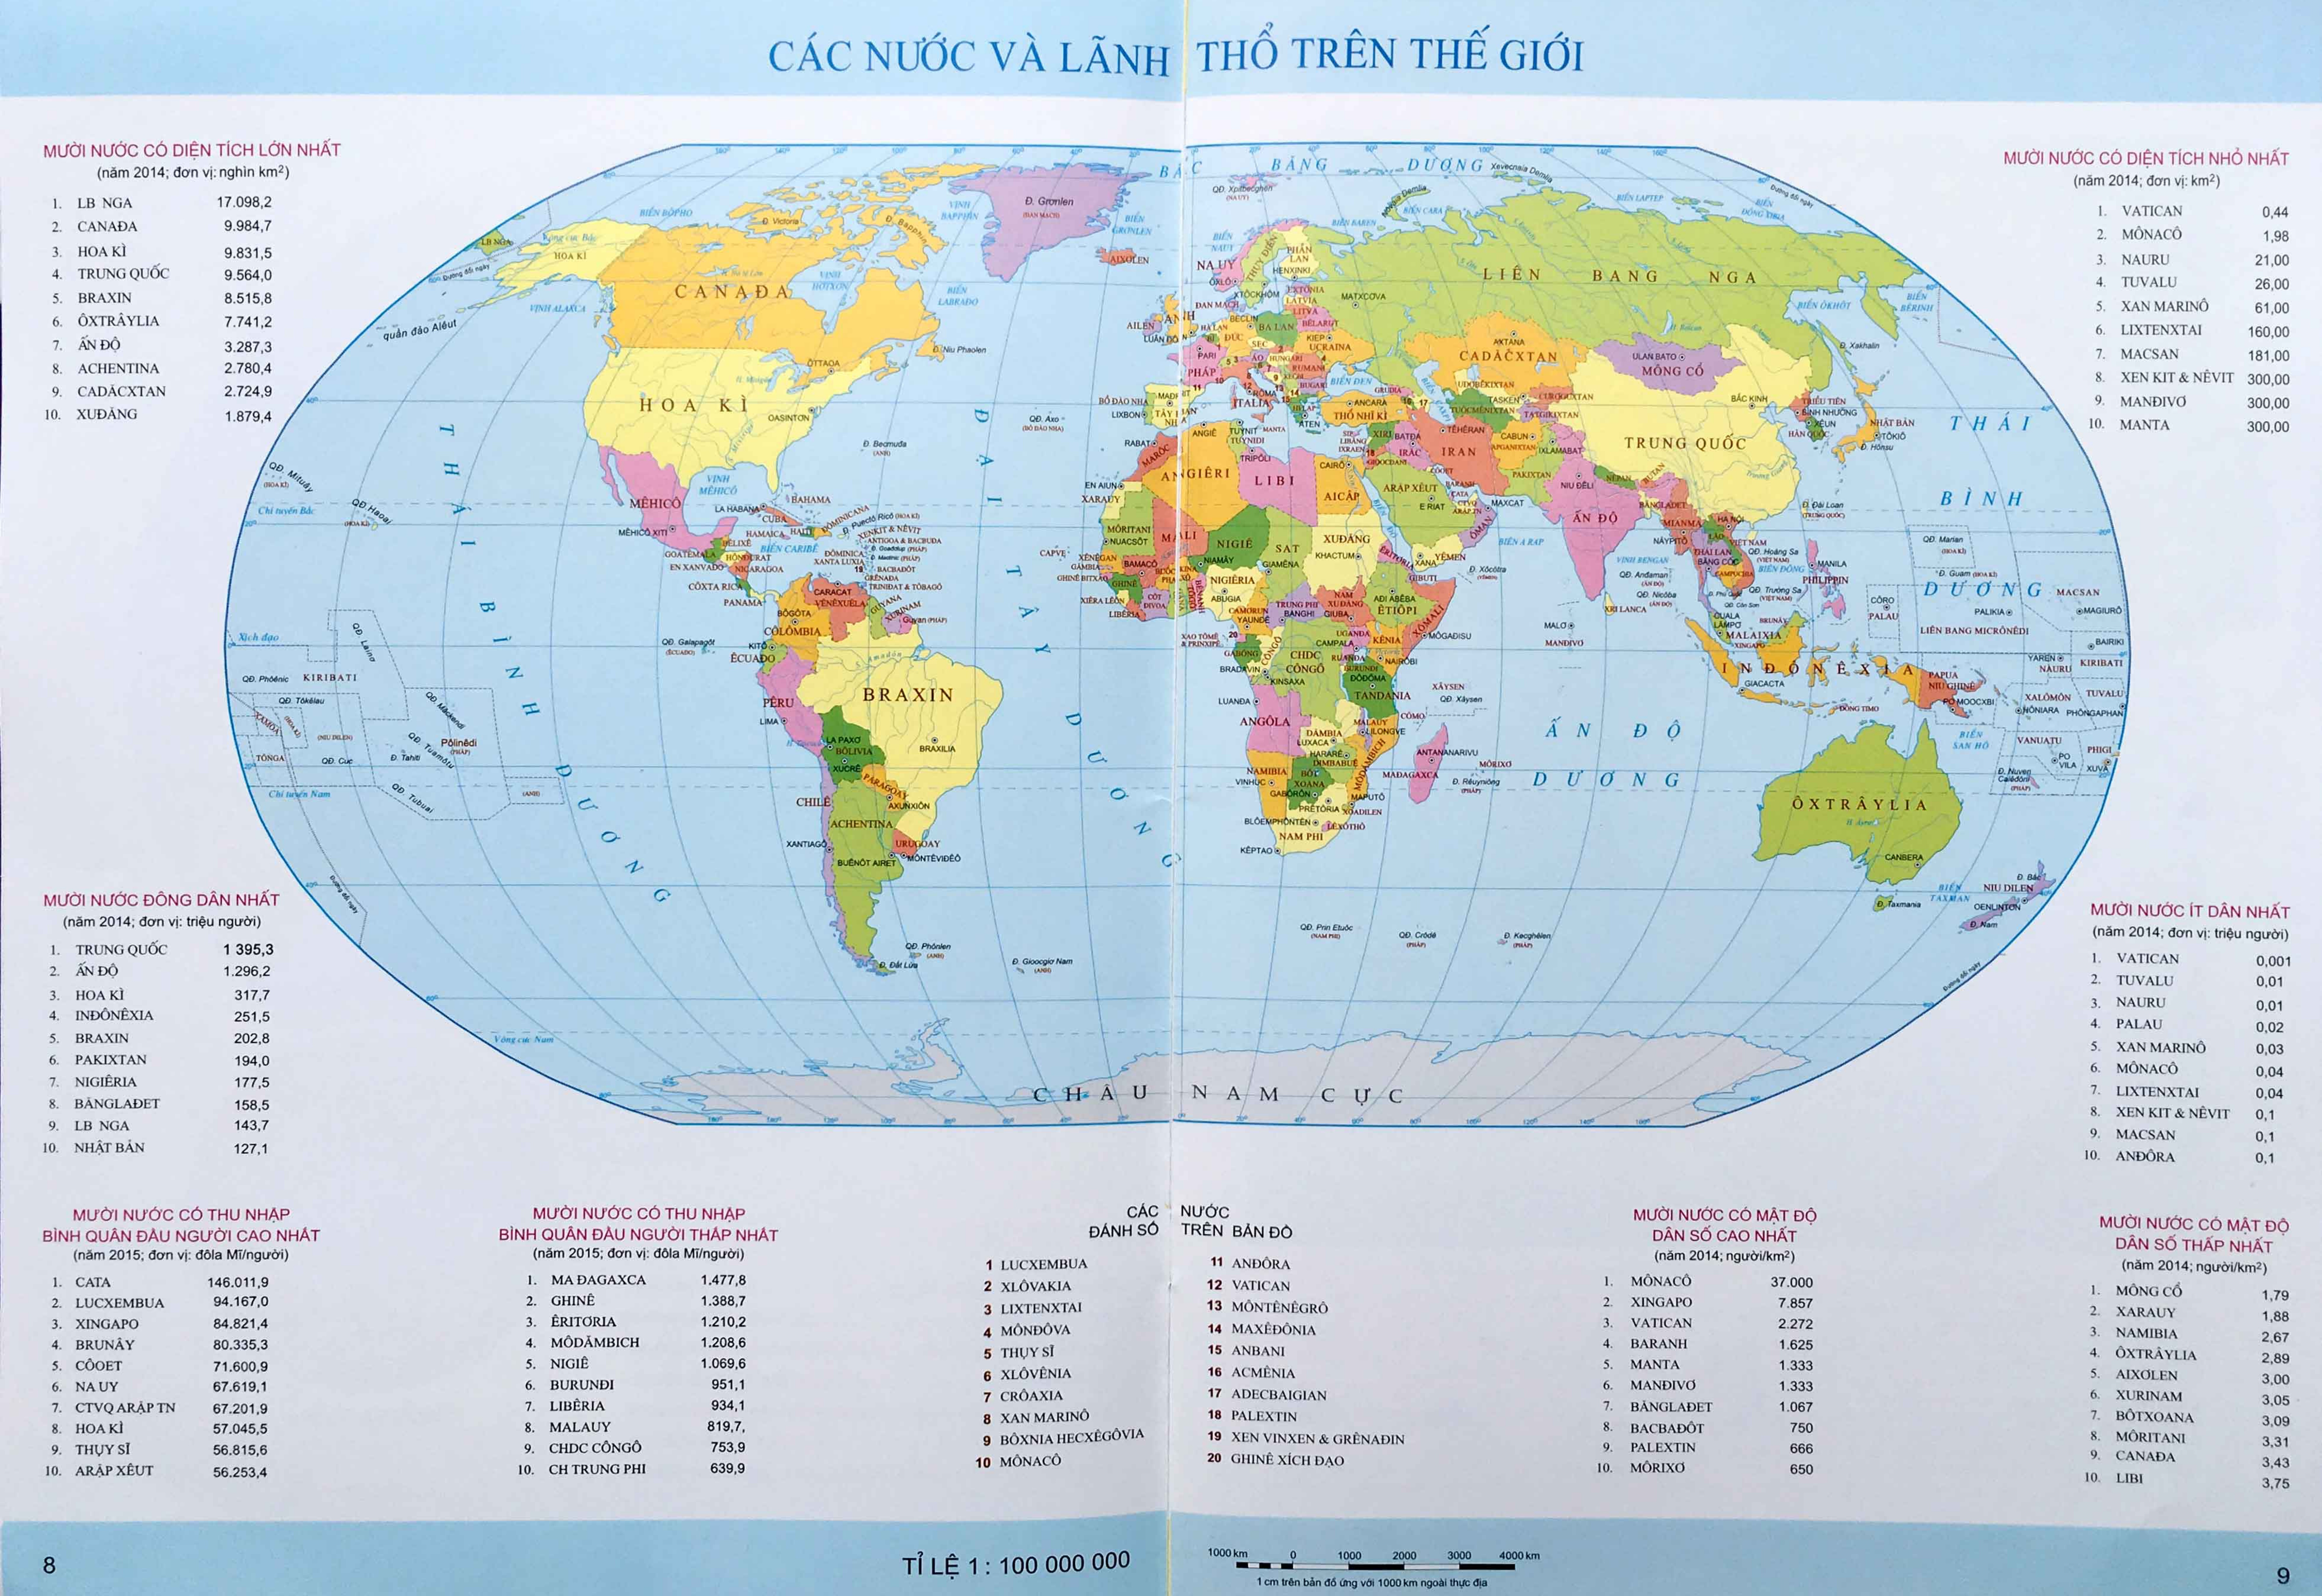 Mẫu bản đồ thế giới độ phân giải cao được cập nhật mới nhất sẽ đưa bạn đến một hành trình khám phá thế giới chưa từng có. Những chi tiết tuyệt đẹp và độ sắc nét cao sẽ giúp bạn tìm hiểu về địa lý và văn hóa của mỗi quốc gia trên thế giới.